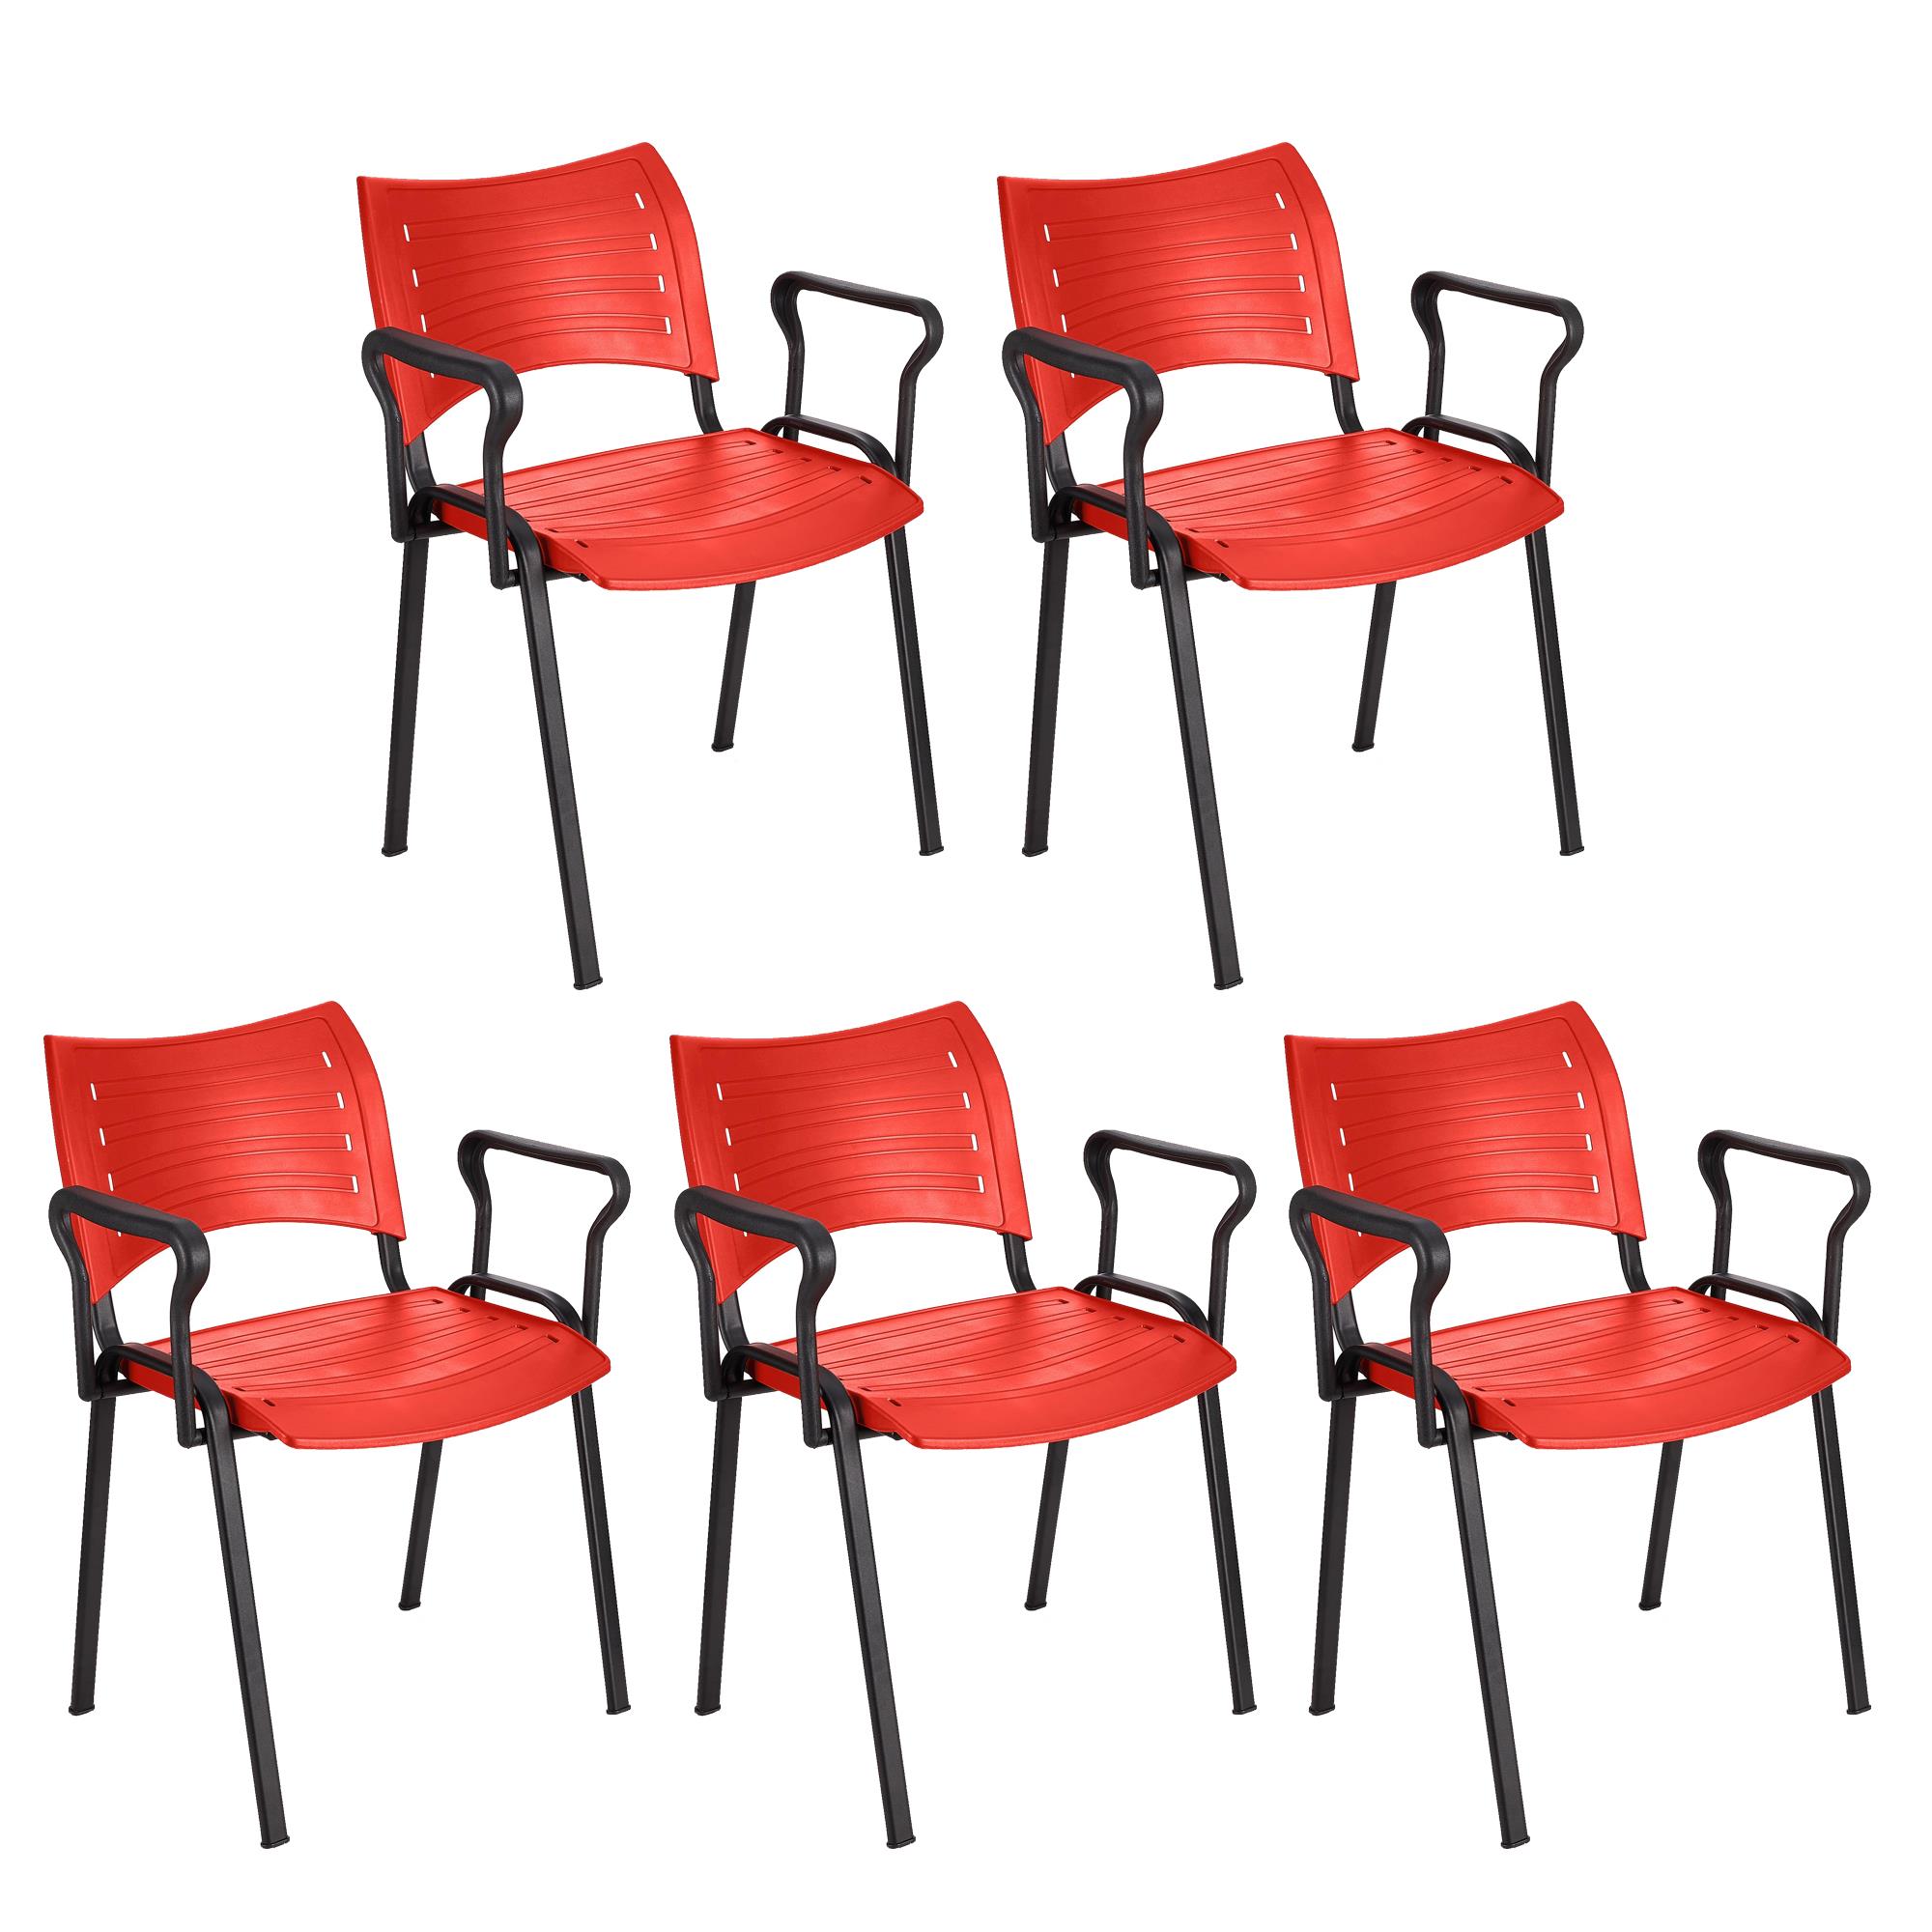 Lote 5 Cadeiras de Visita ELVA COM BRAÇOS, Confortável, Pernas Pretas, Cor Vermelho